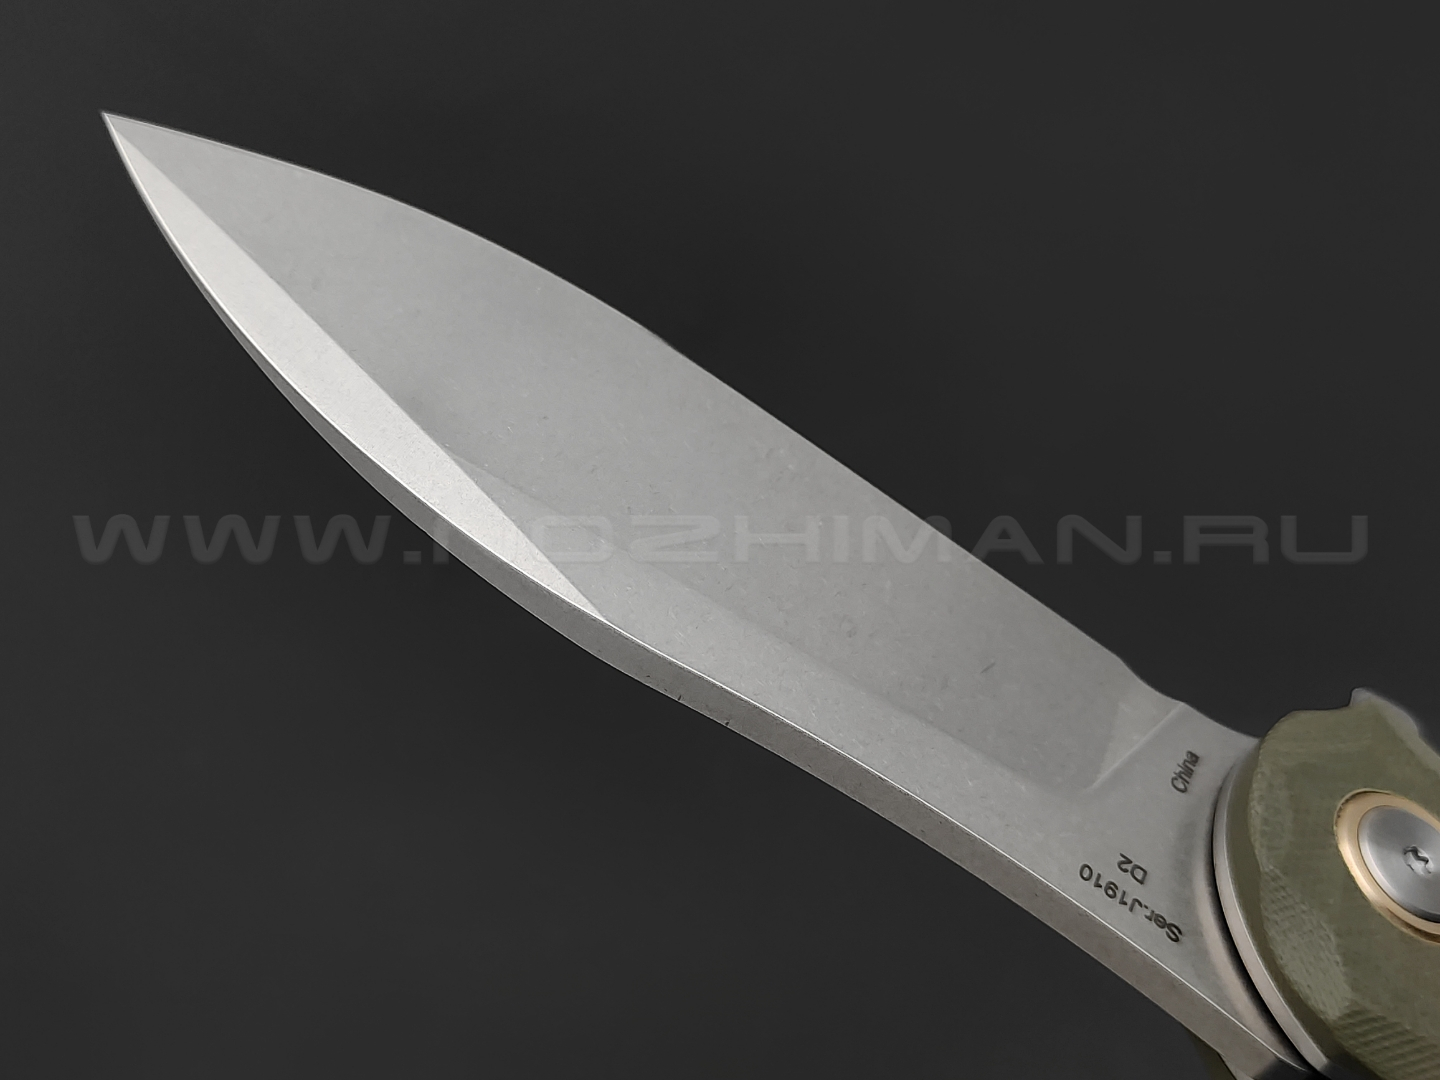 Нож CJRB Mangrove J1910-GNC сталь D2, рукоять G10 green